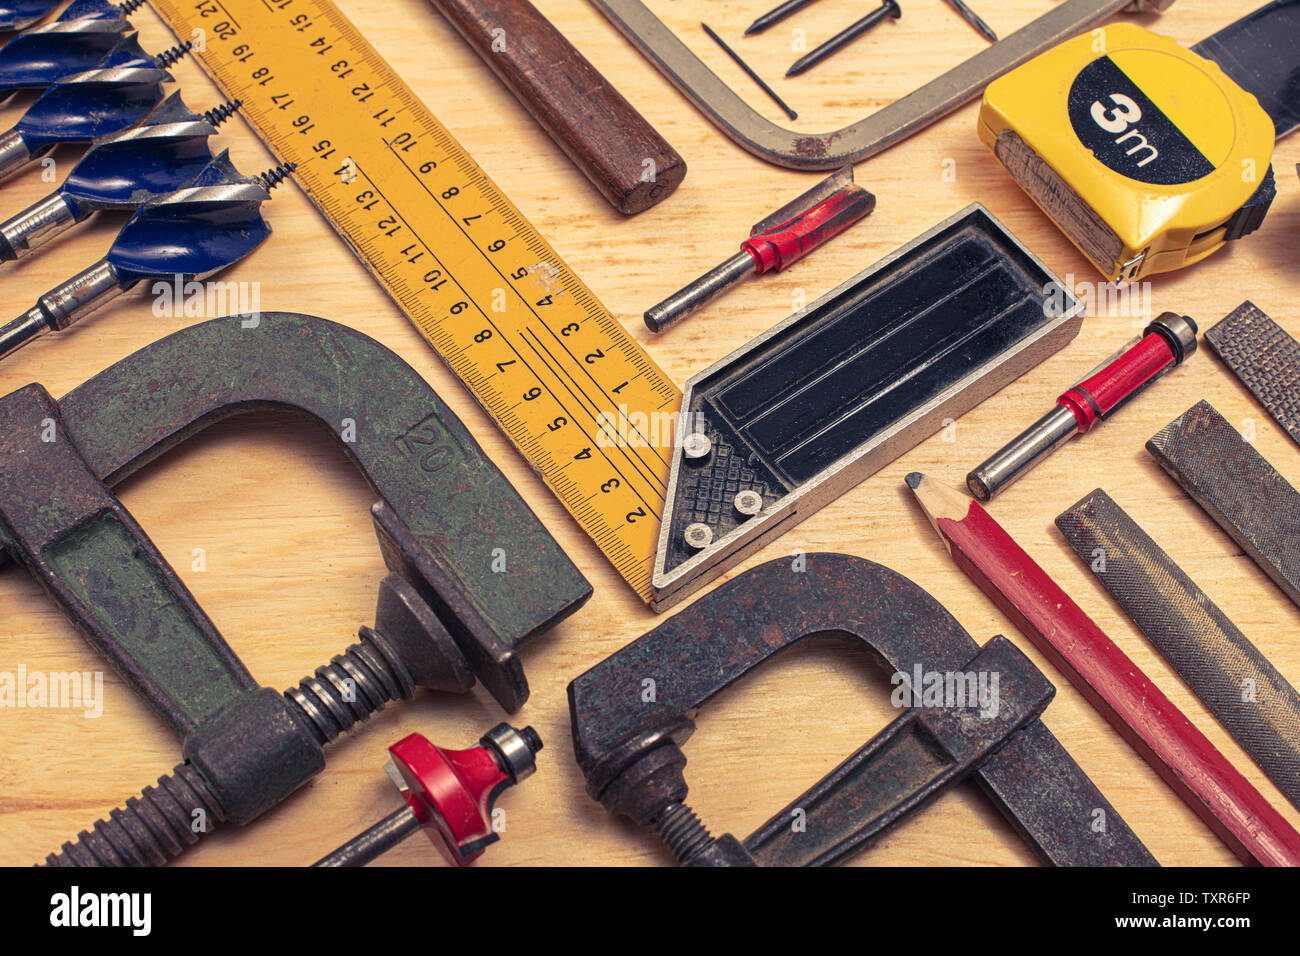 Composition de différents outils mécaniques liés à l'échange de carpenter.du vrai et utilisé des objets. Banque D'Images